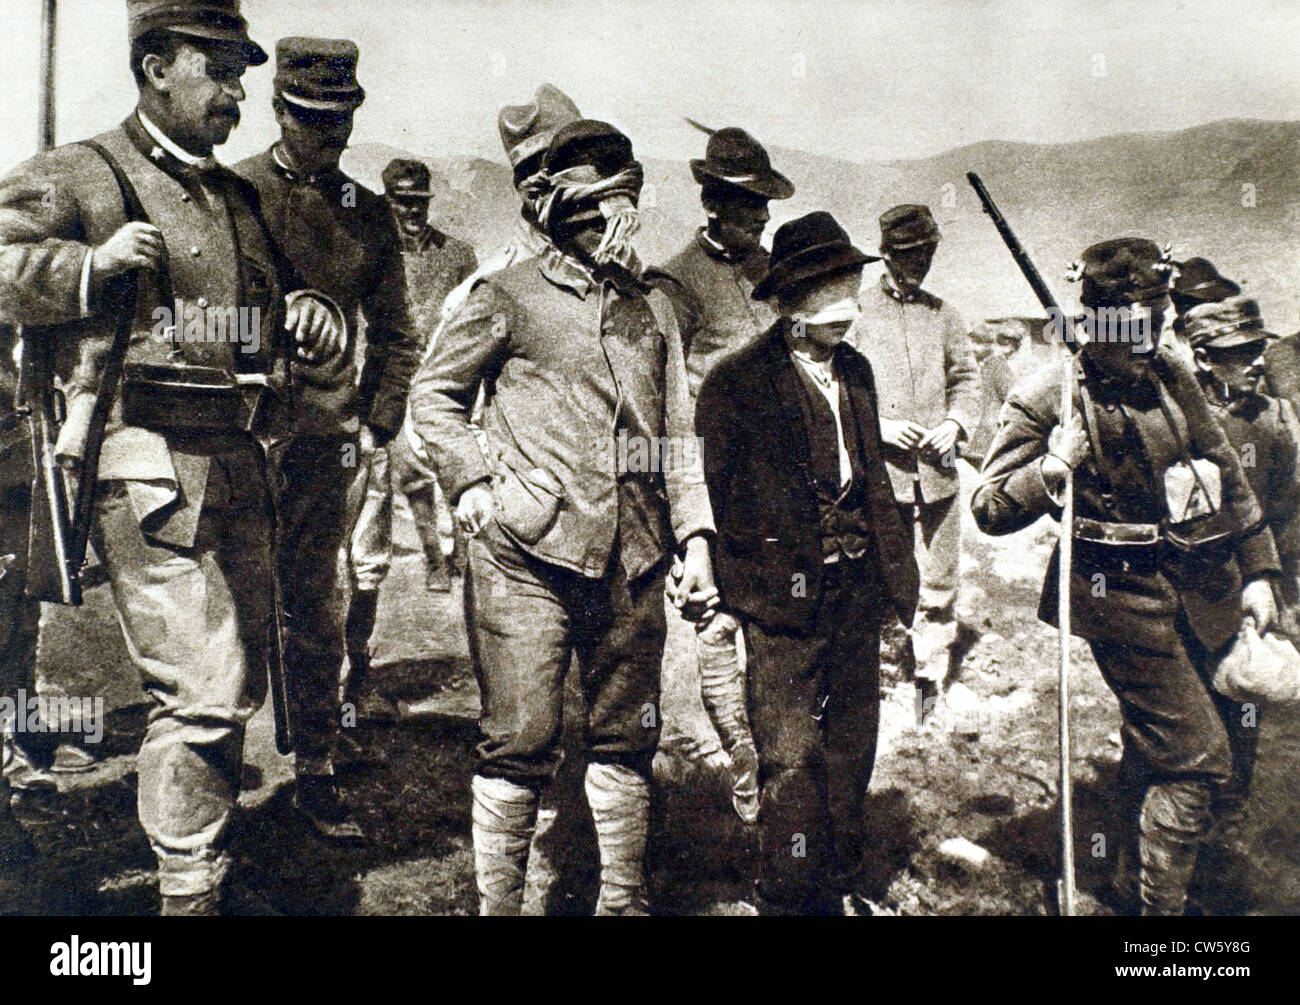 Ersten Weltkrieg. In Italien schließt zwei Spione, die nur ergriffen, mit verbundenen Augen gefangen genommen wurden Hauptquartier abgefragt werden Stockfoto